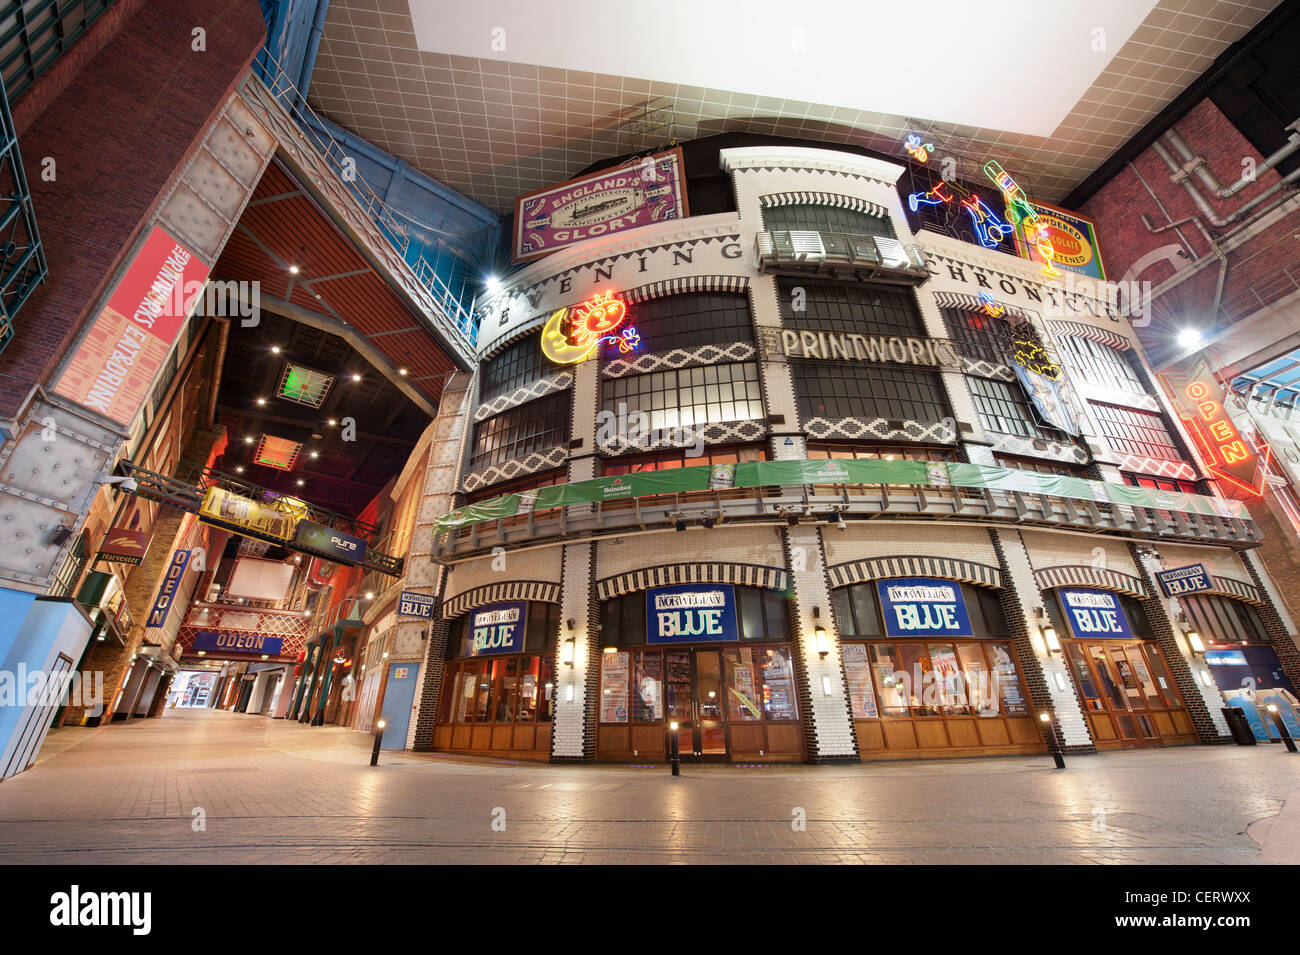 Die Printworks Veranstaltungsort in Manchester mit einem Odeon-Kino, Restaurants und Bars. Stockfoto